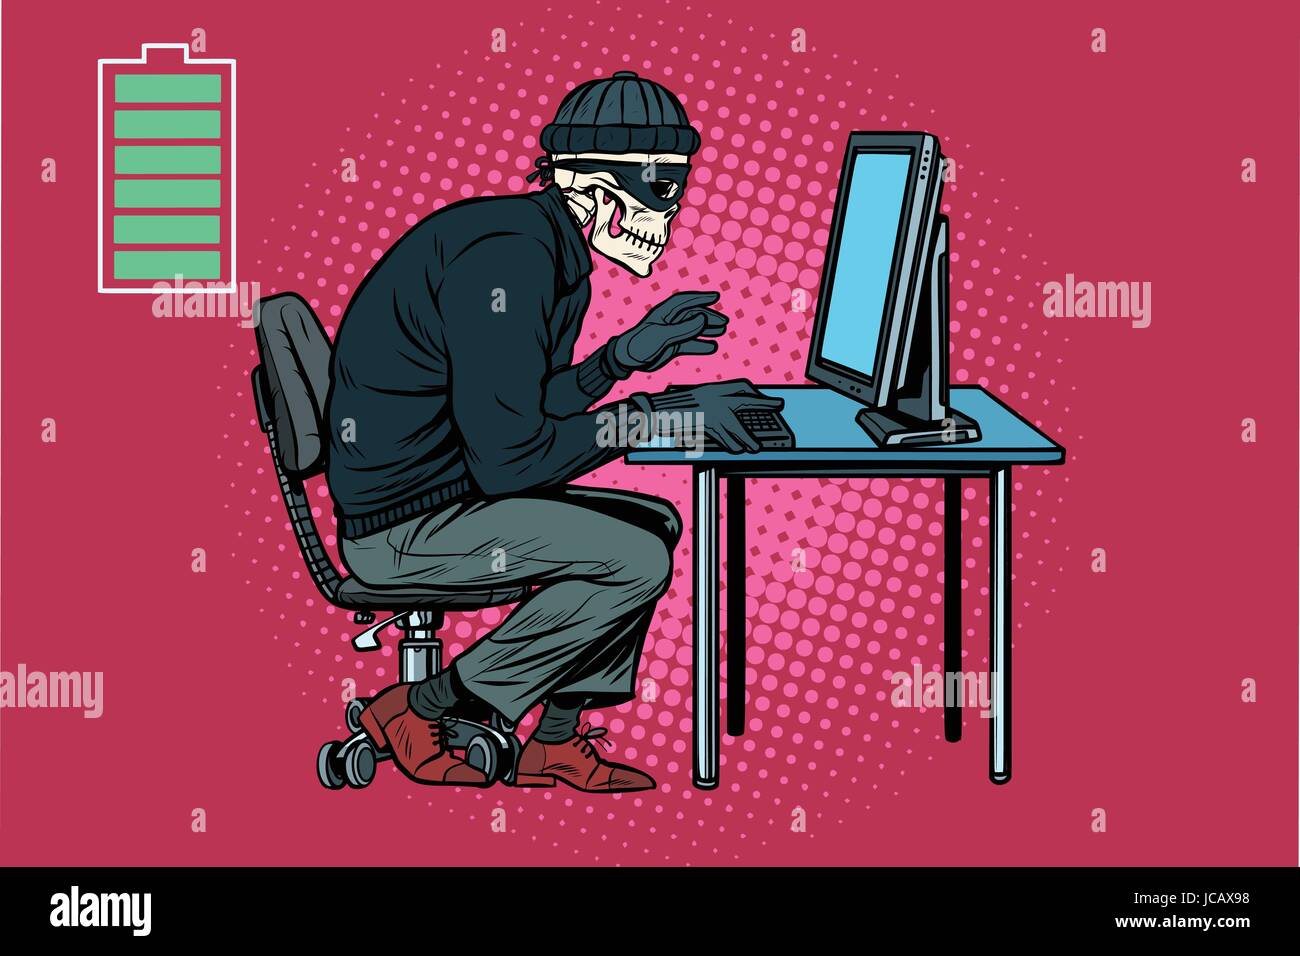 Scheletro morto hacker hacked computer. La Pop art retrò illustrazione vettoriale Illustrazione Vettoriale